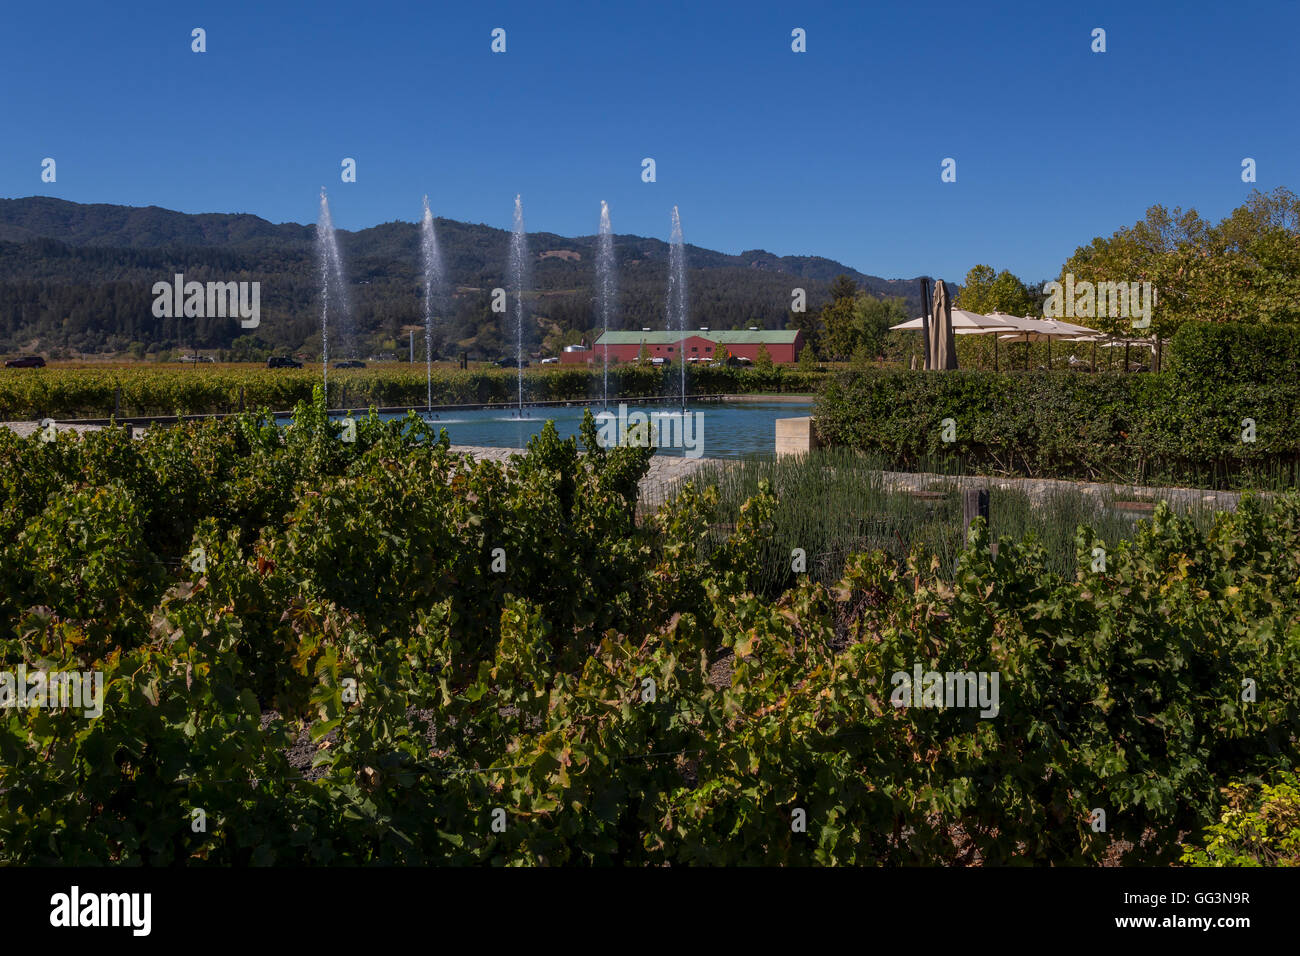 Weinberg, Traube Weinberg, outdoor Terrasse schmecken. Outdoor-Weinprobe, Brunnen, Alpha Omega Winery, Napa Valley, Kalifornien Stockfoto